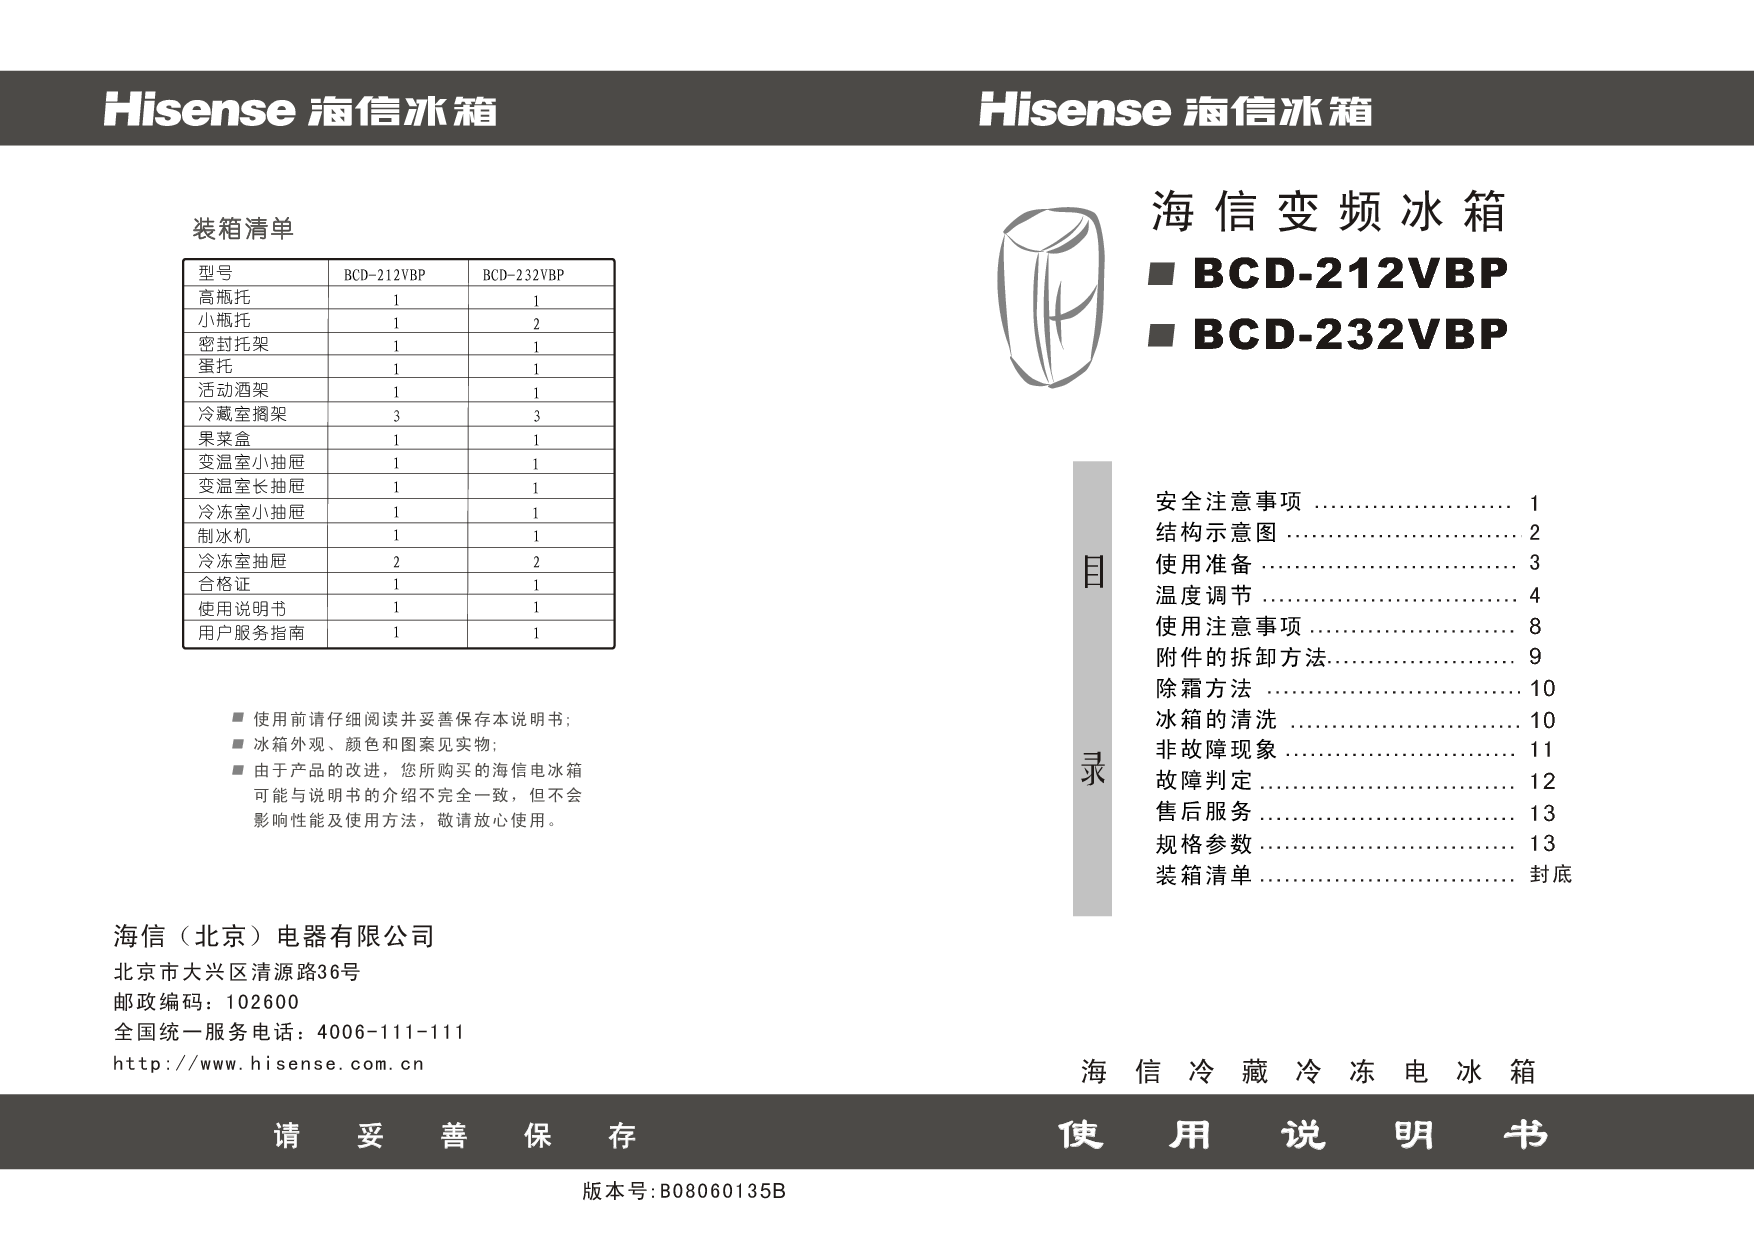 海信 Hisense BCD-212VBP 使用说明书 封面